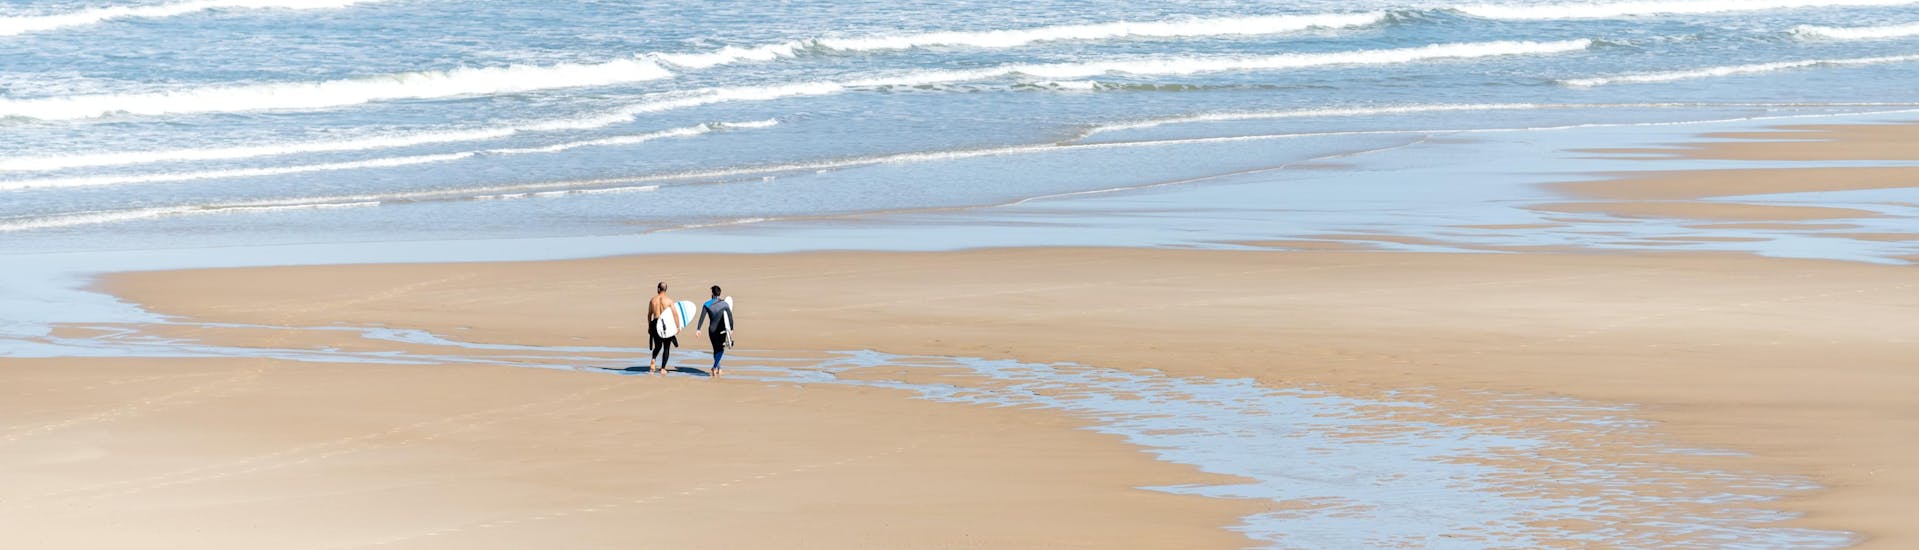 Zwei Surfer gehen beim Surfen in der Gironde im Neoprenanzug den Strand entlang.